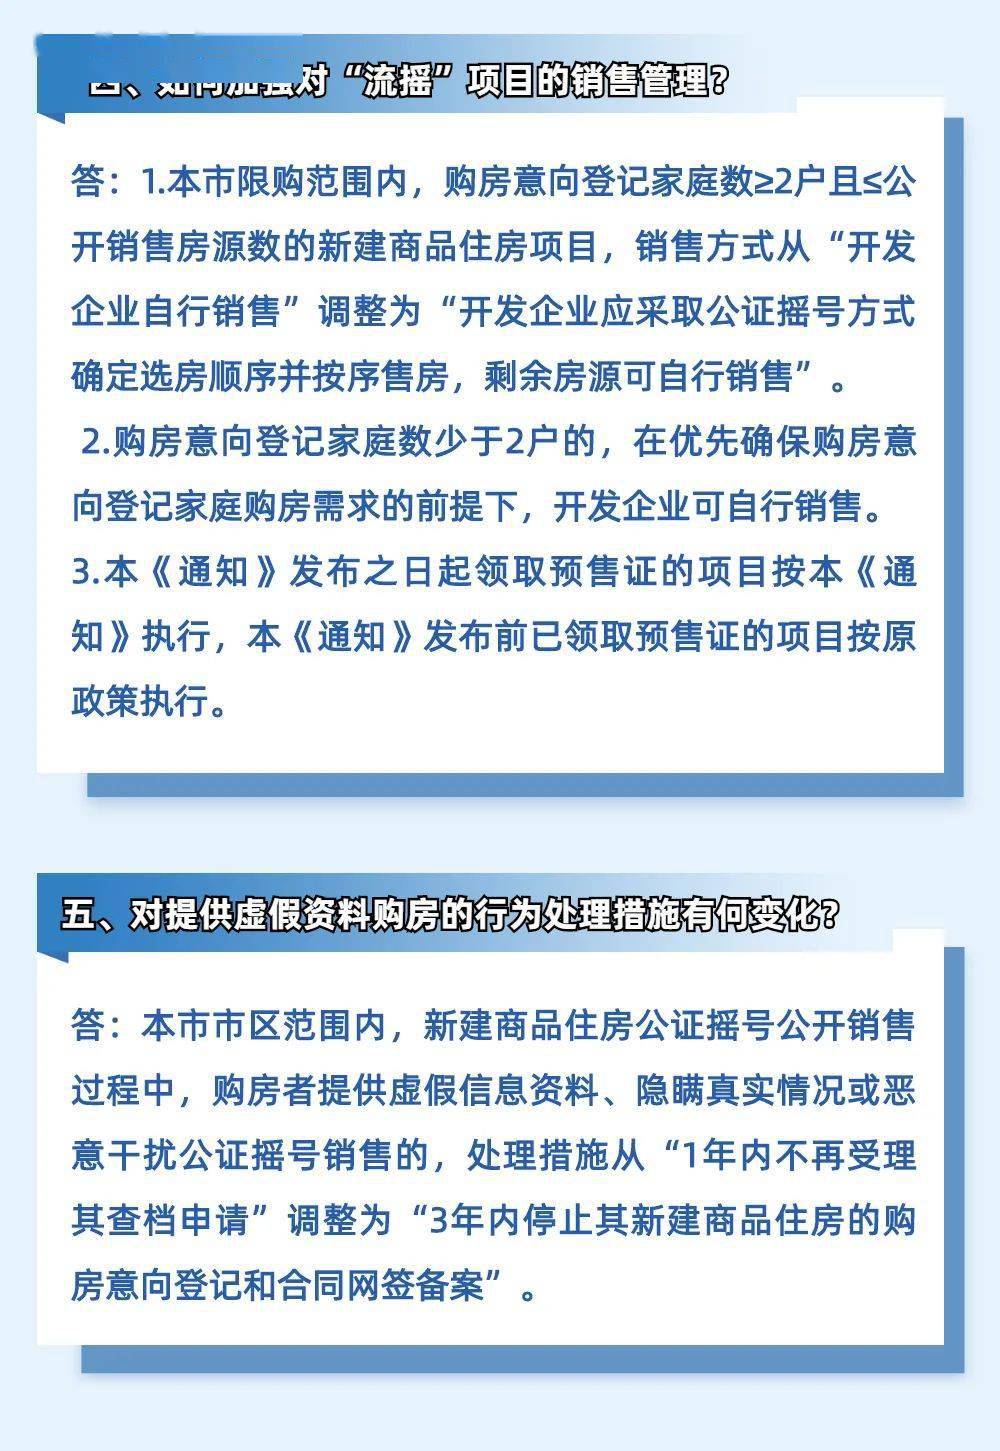 刚刚 杭州楼市新政来了 新落户社保2年,外地4年 造假重罚 人才排序 社保排序